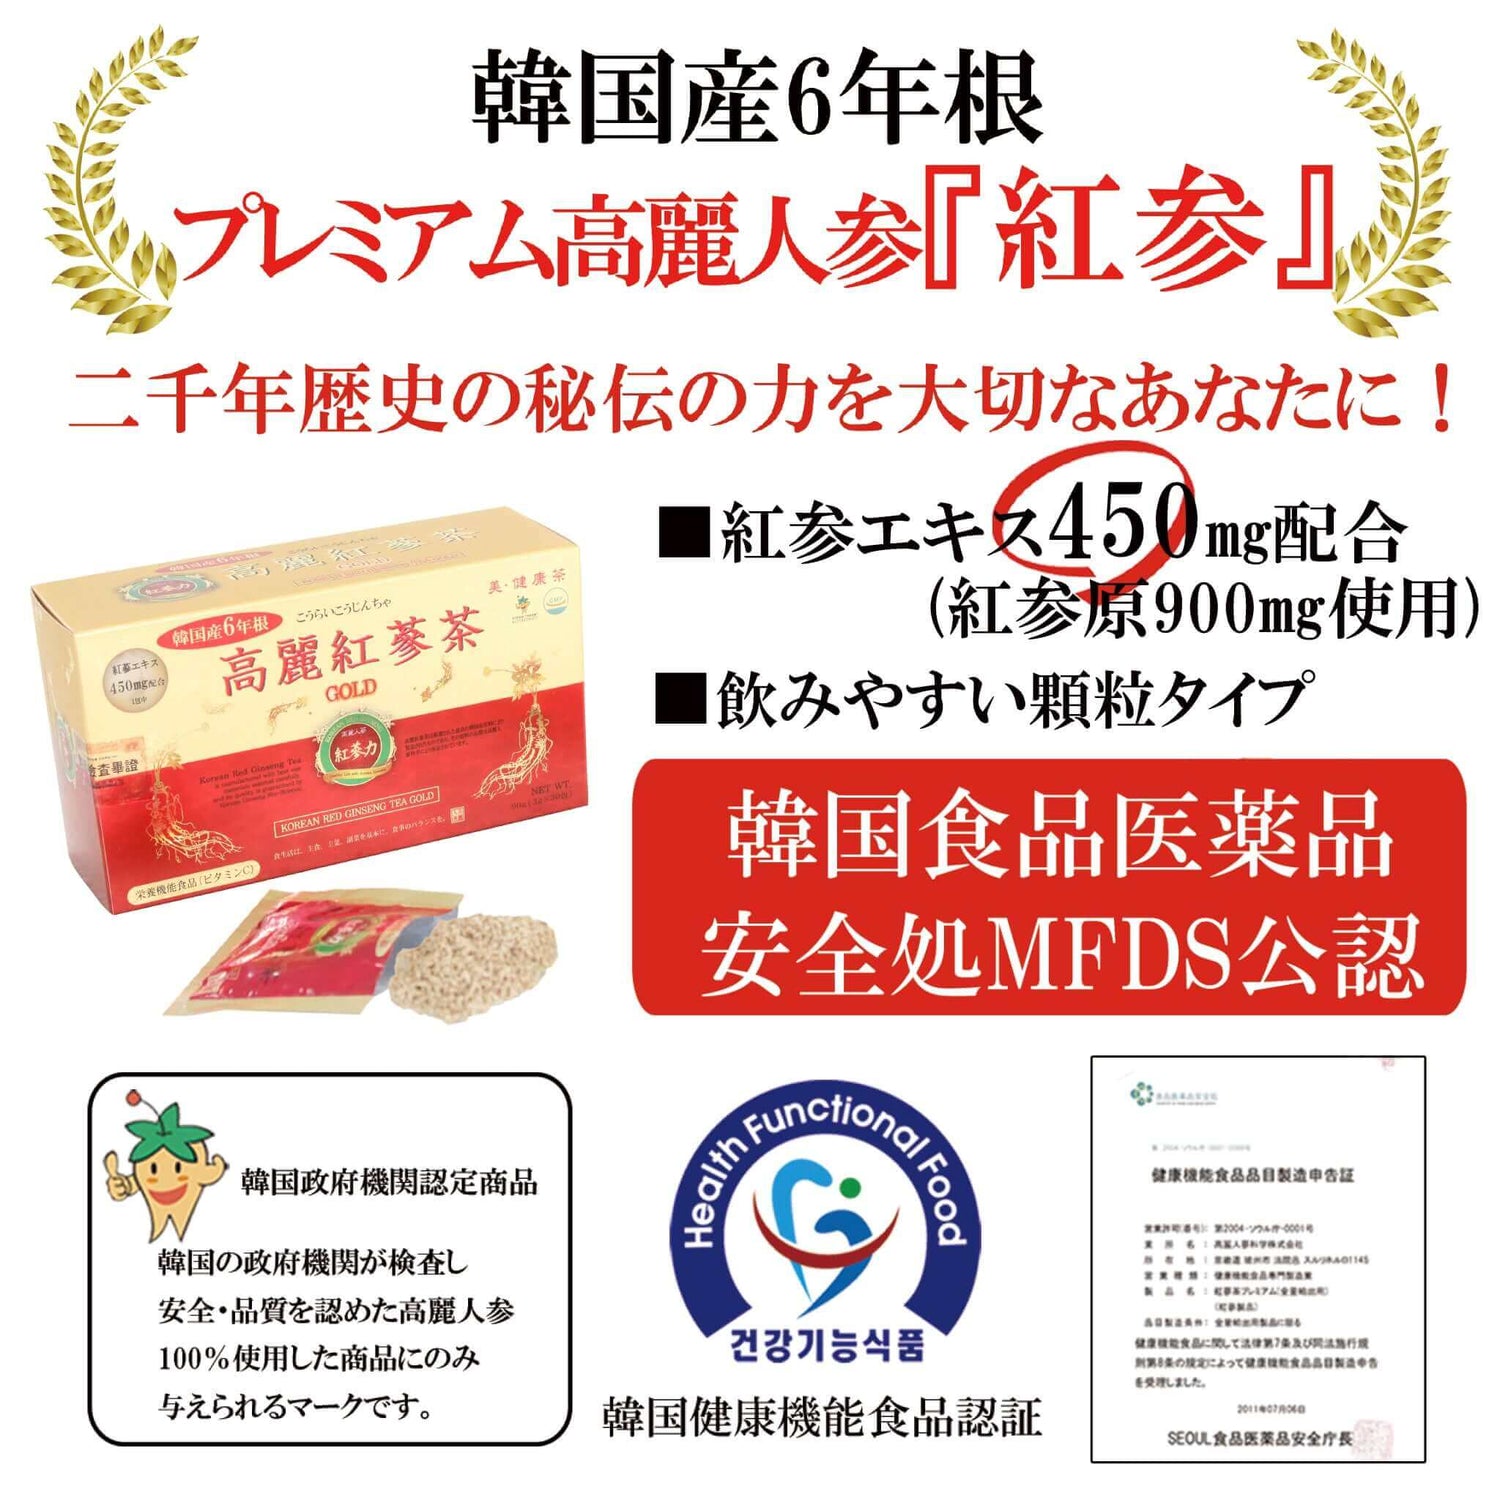 【紅参力】高麗紅参茶GOLD - 韓国惣菜bibim'ネットストア